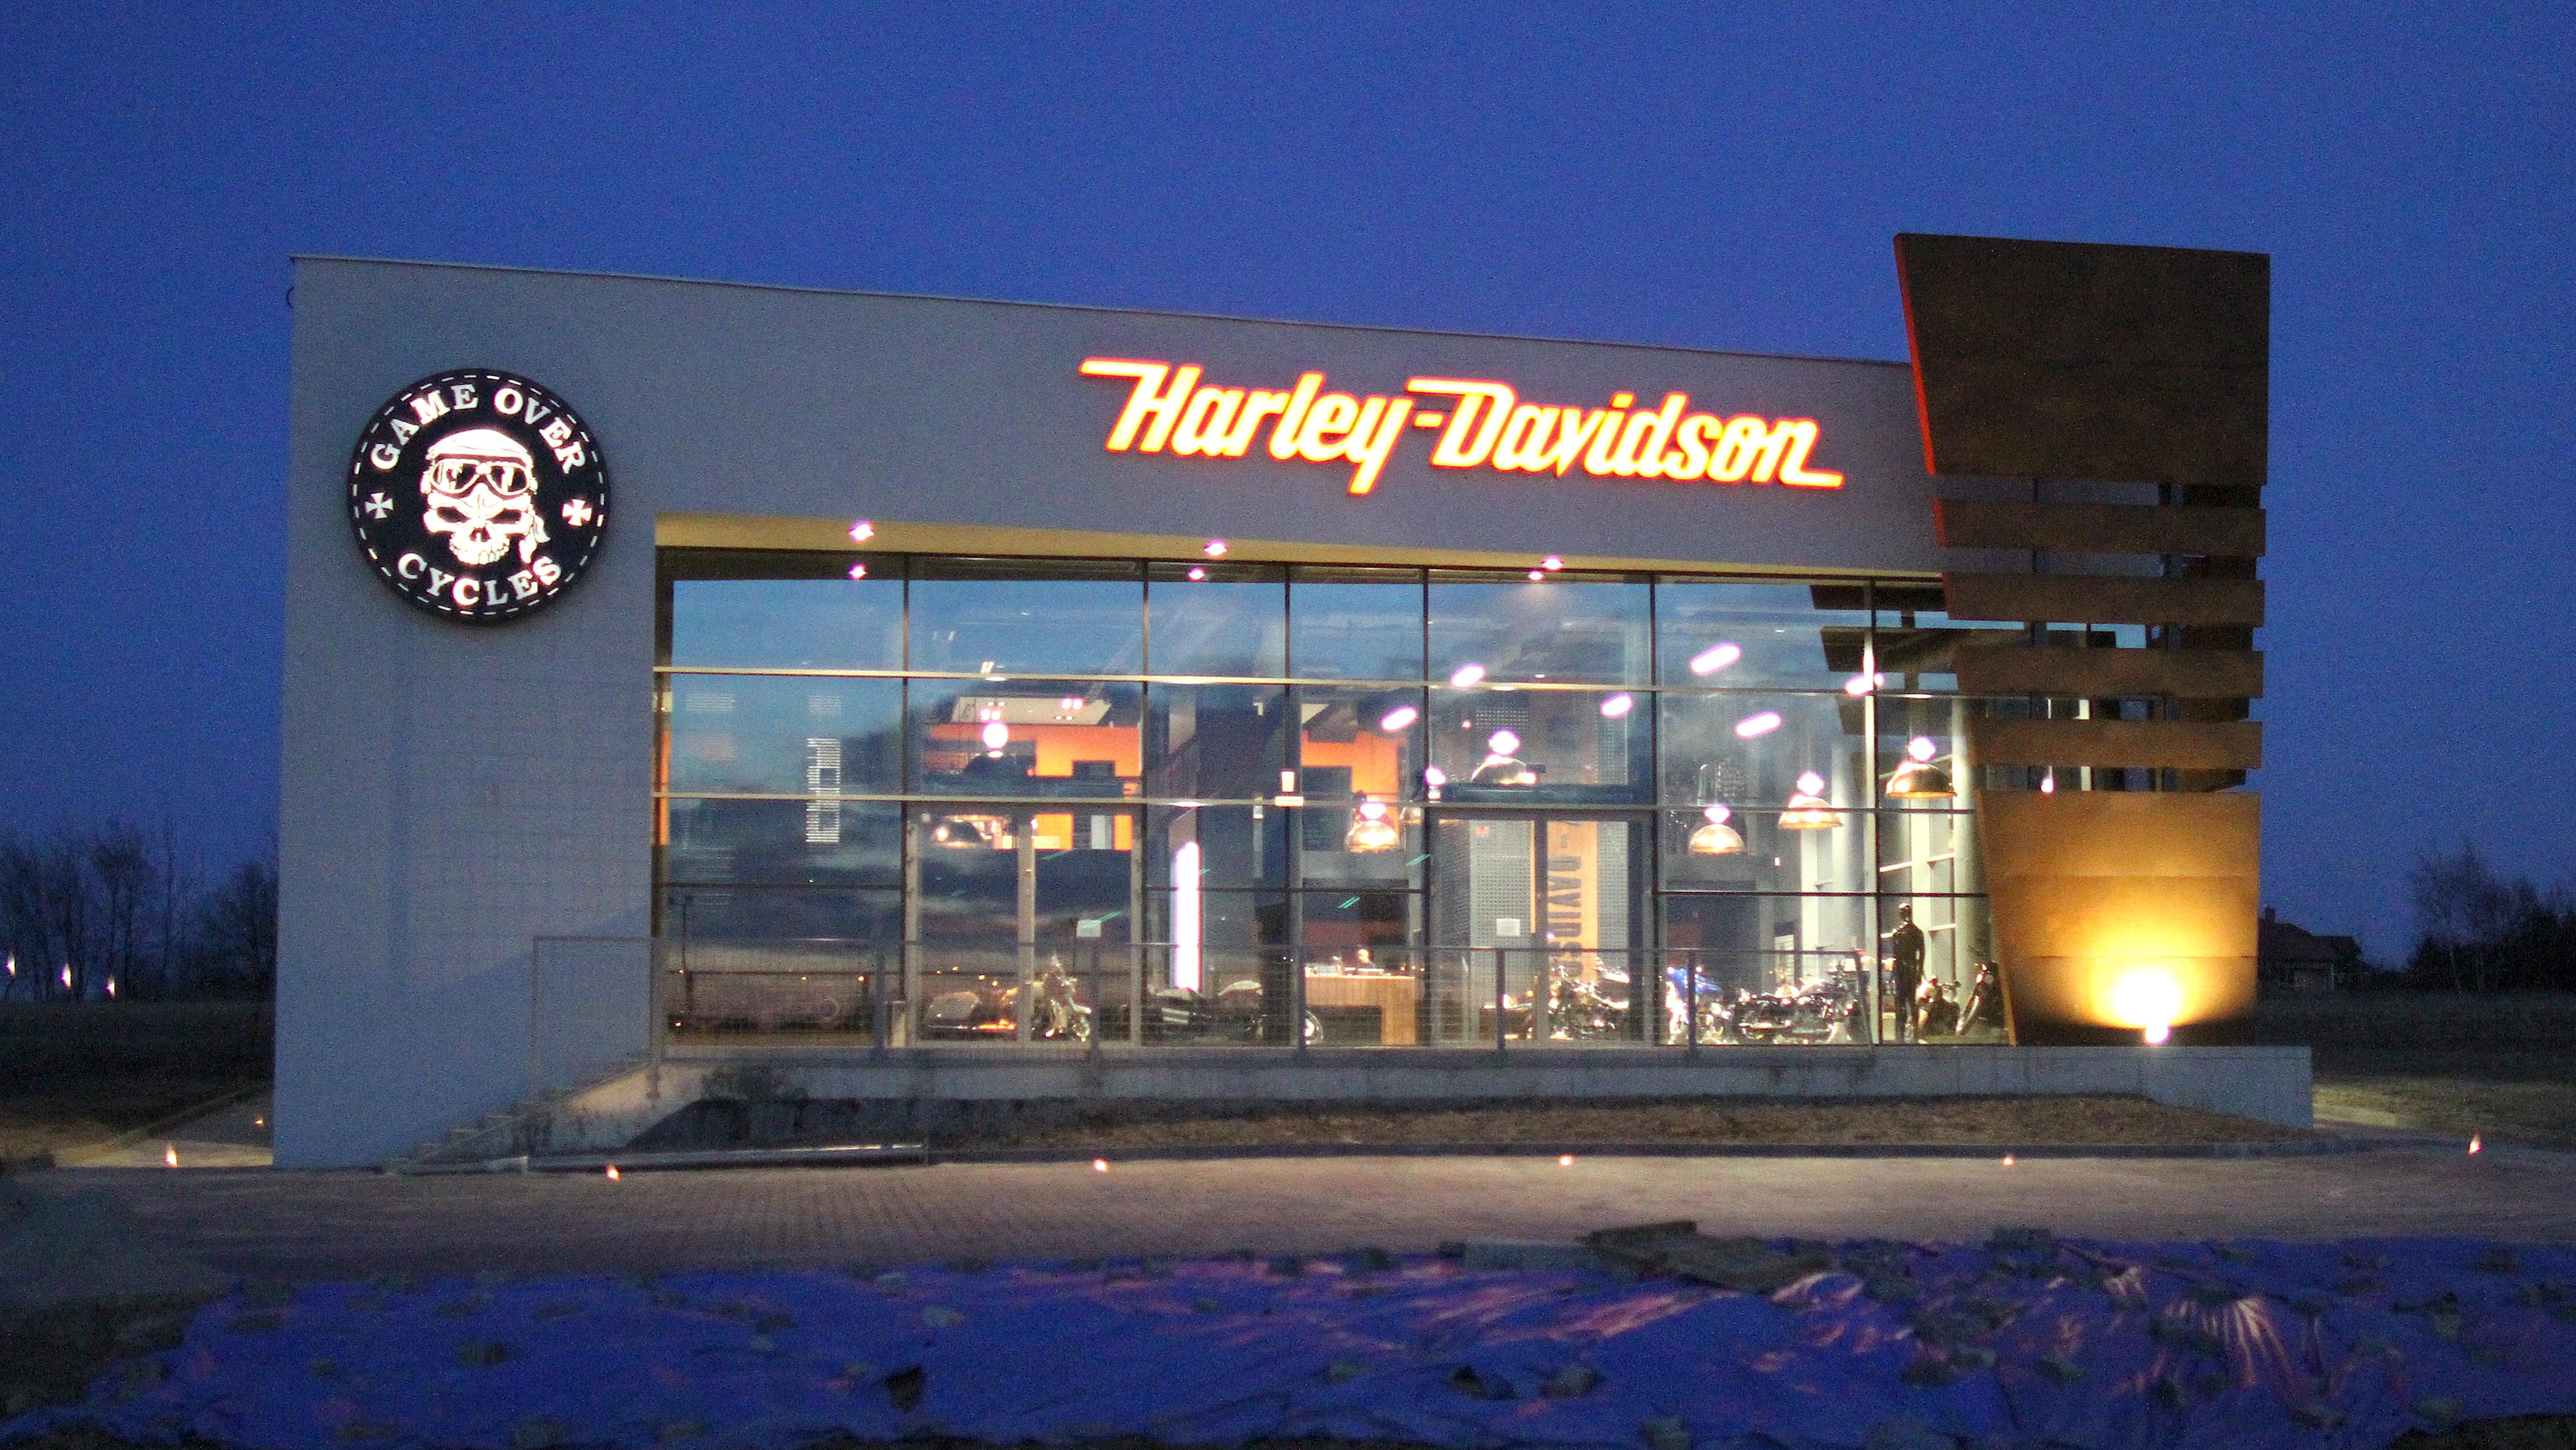 Otwarto Salon Harley Davidson W Rzeszowie Najwiekszy W Europie Wschodniej